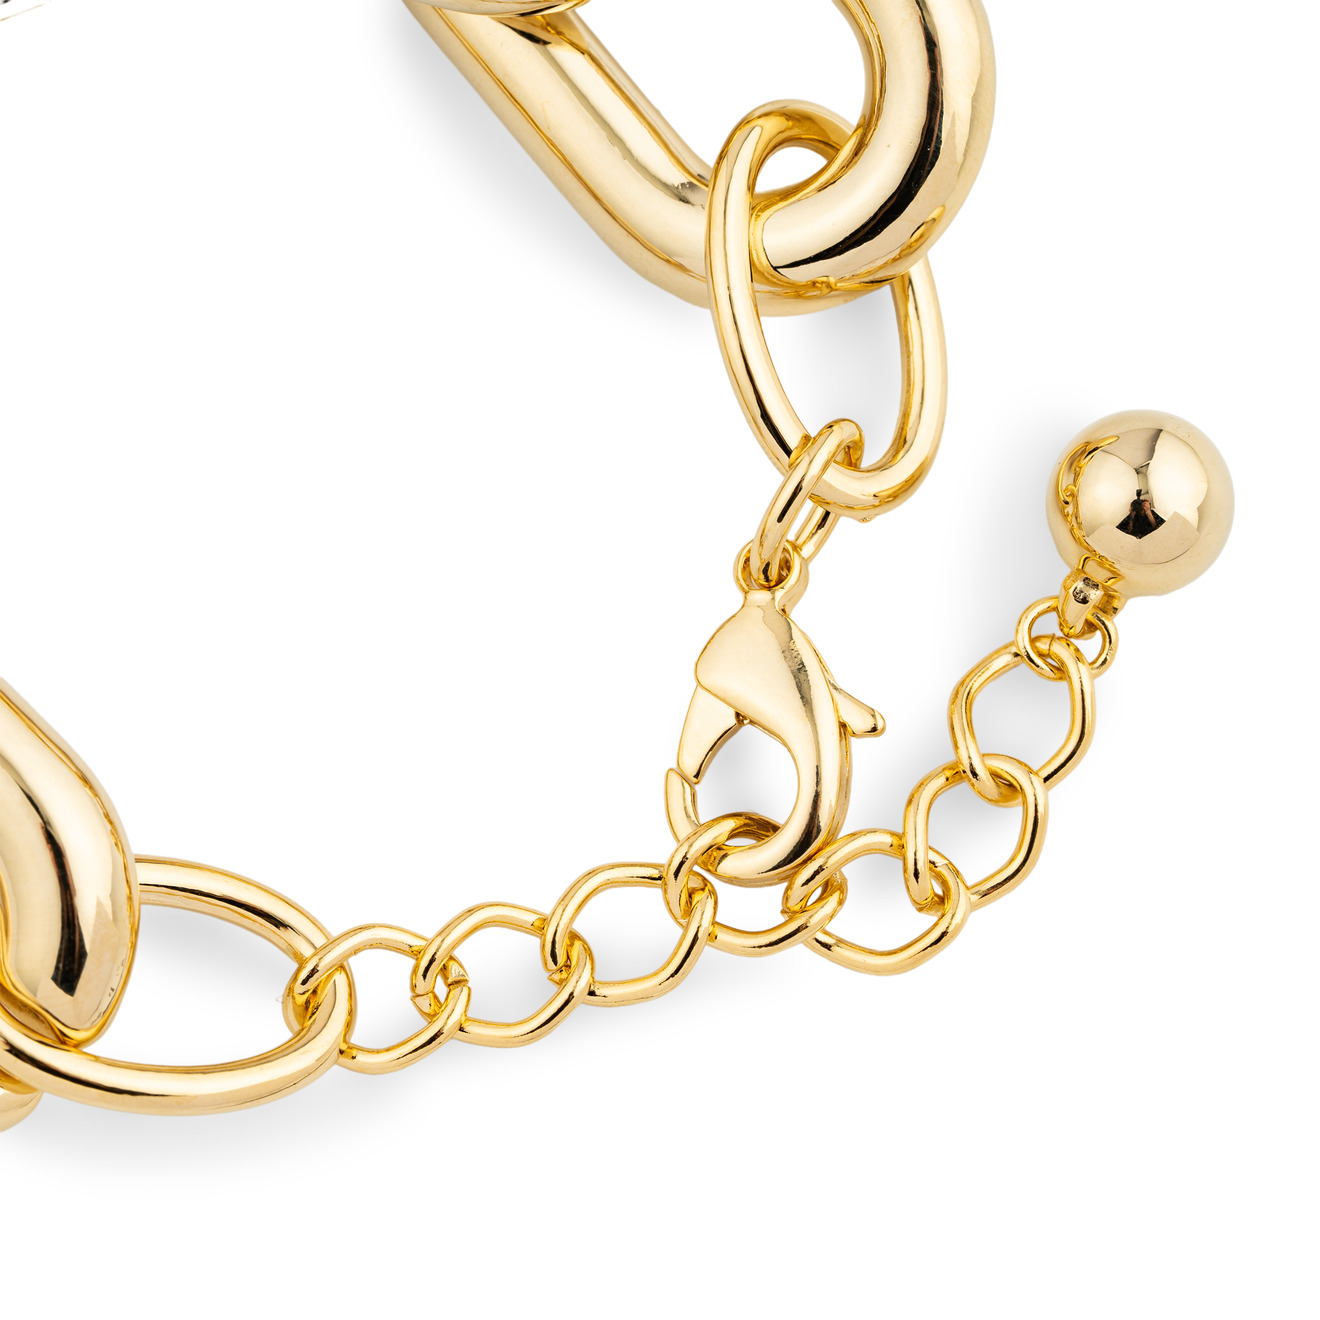 Aqua Золотистый браслет-цепь из крупных звеньев aqua золотистый тройной браслет